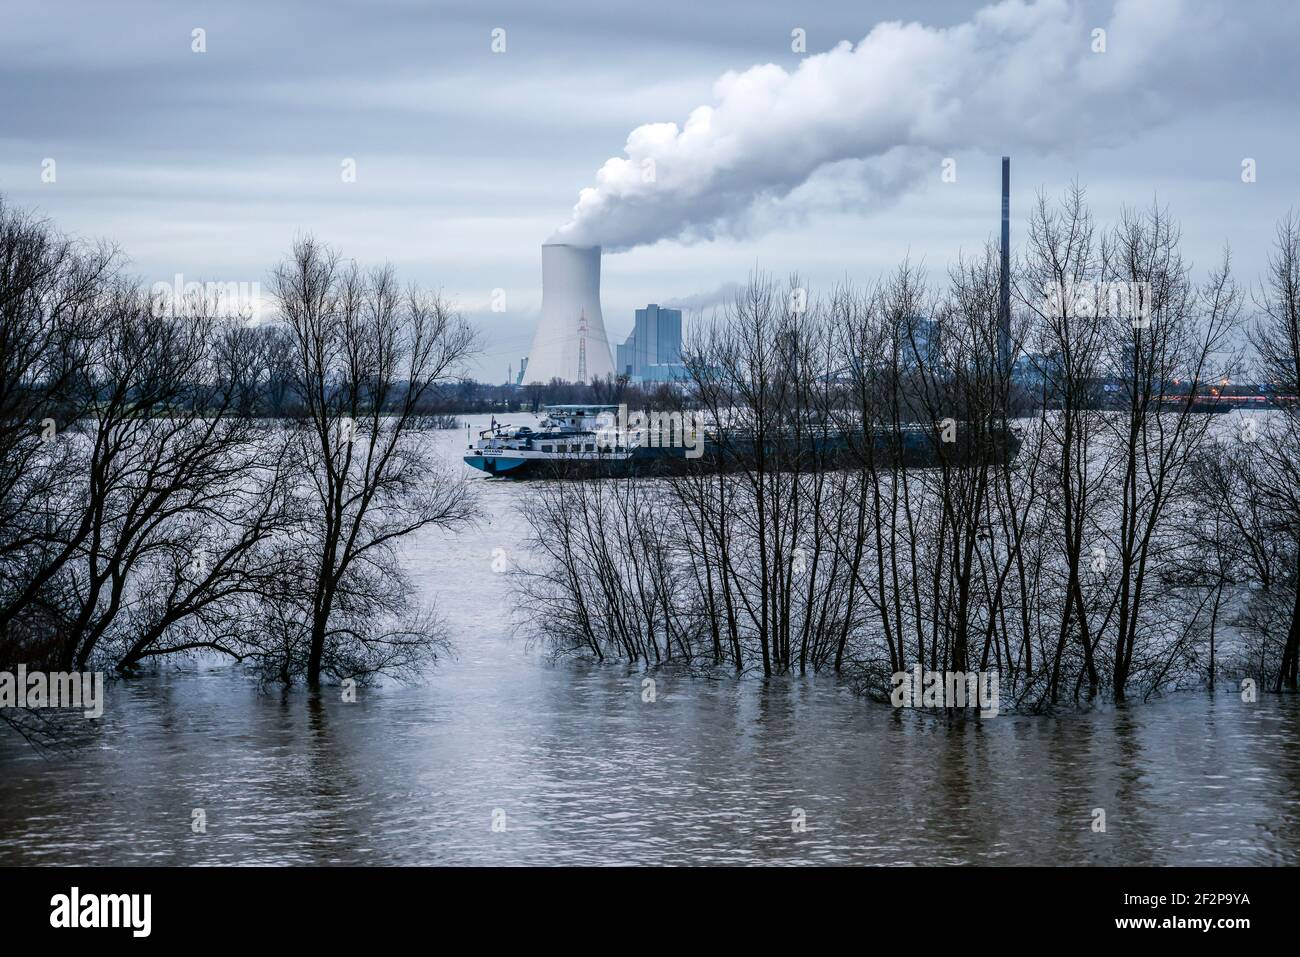 Duisburg, Nordrhein-Westfalen, Deutschland - Überschwemmungen am Rhein, die Bäume am Deich im Landkreis Marxloh stehen unter Wasser, die Rheinschifffahrt ist noch nicht eingestellt, Frachter dürfen auf dem Rhein fahren, im Hintergrund das Kohlekraftwerk Steag in Duisburg Walsum. Stockfoto